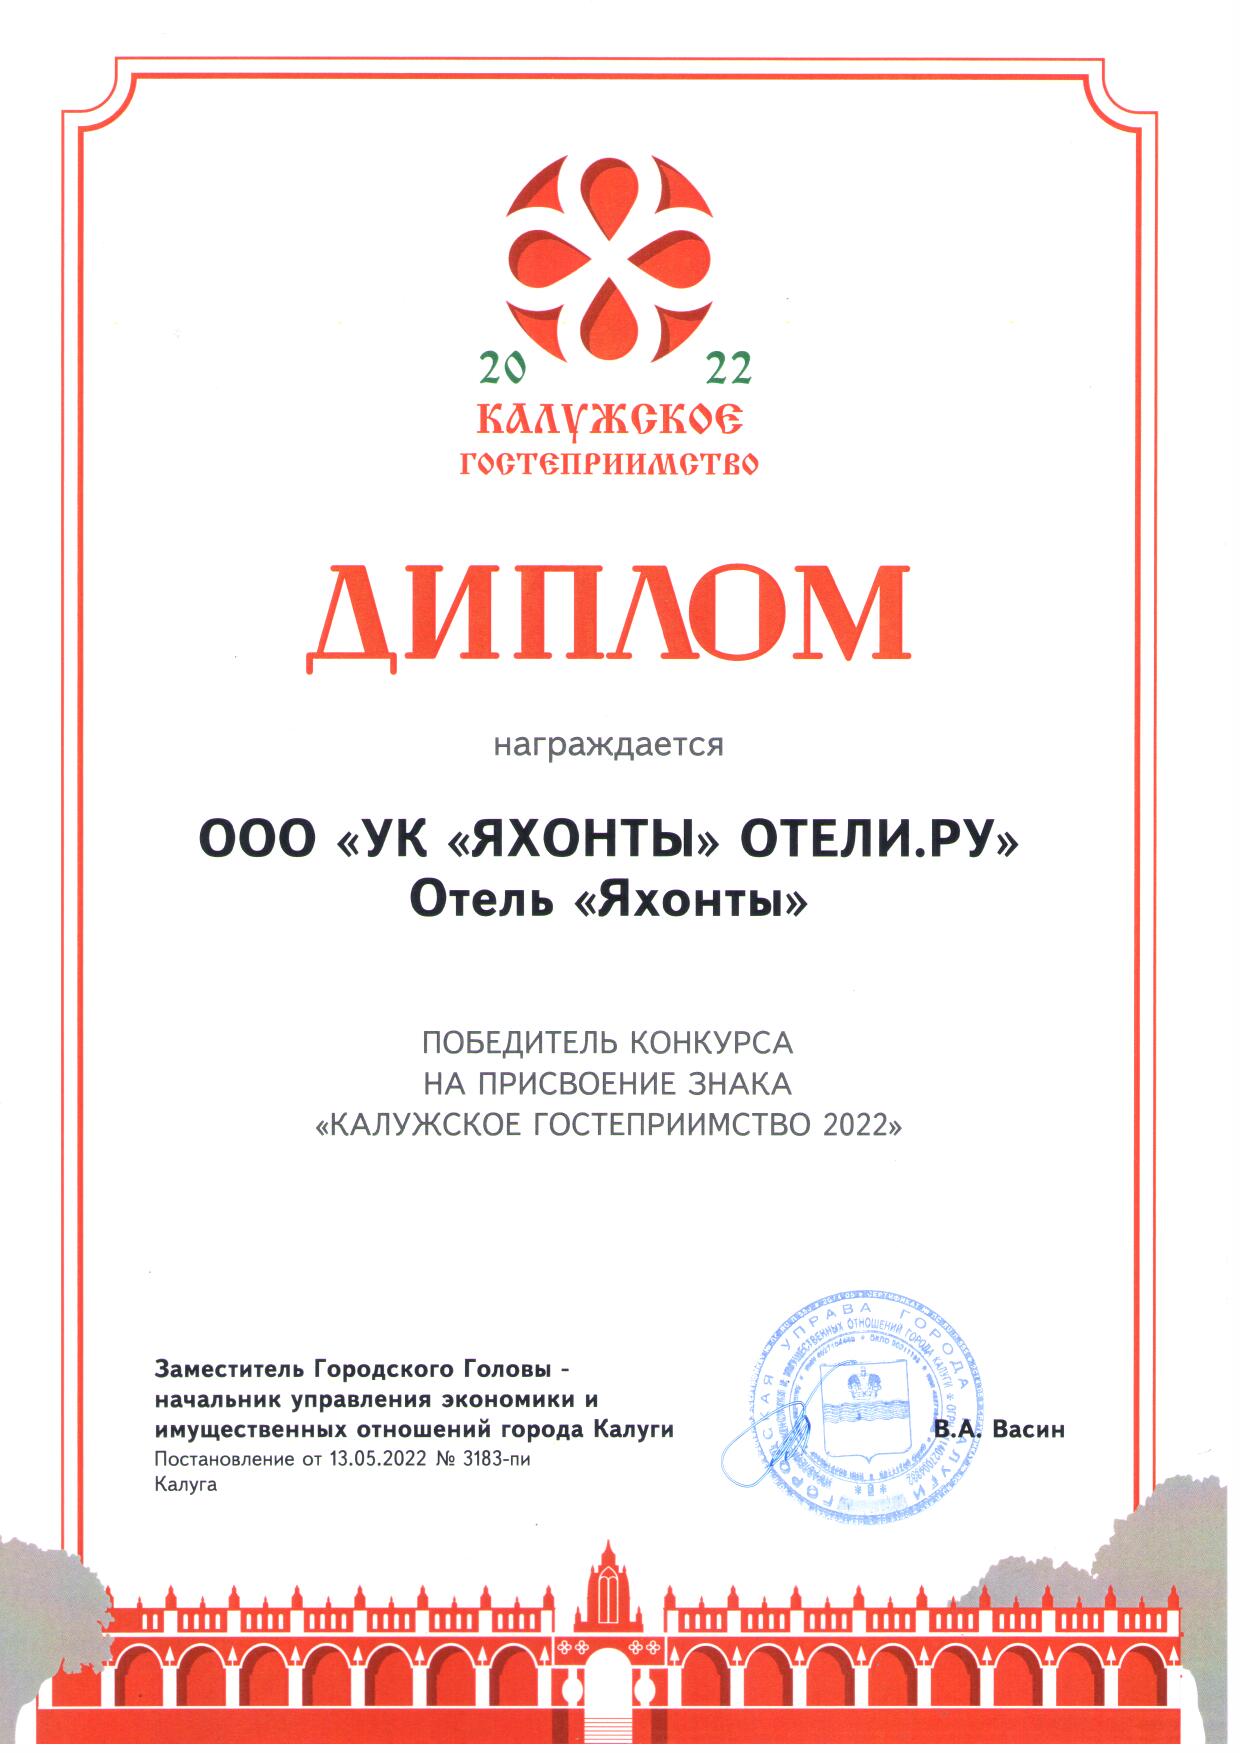 Победитель конкурса на присвоение знака "Калужское гостеприимство 2022"